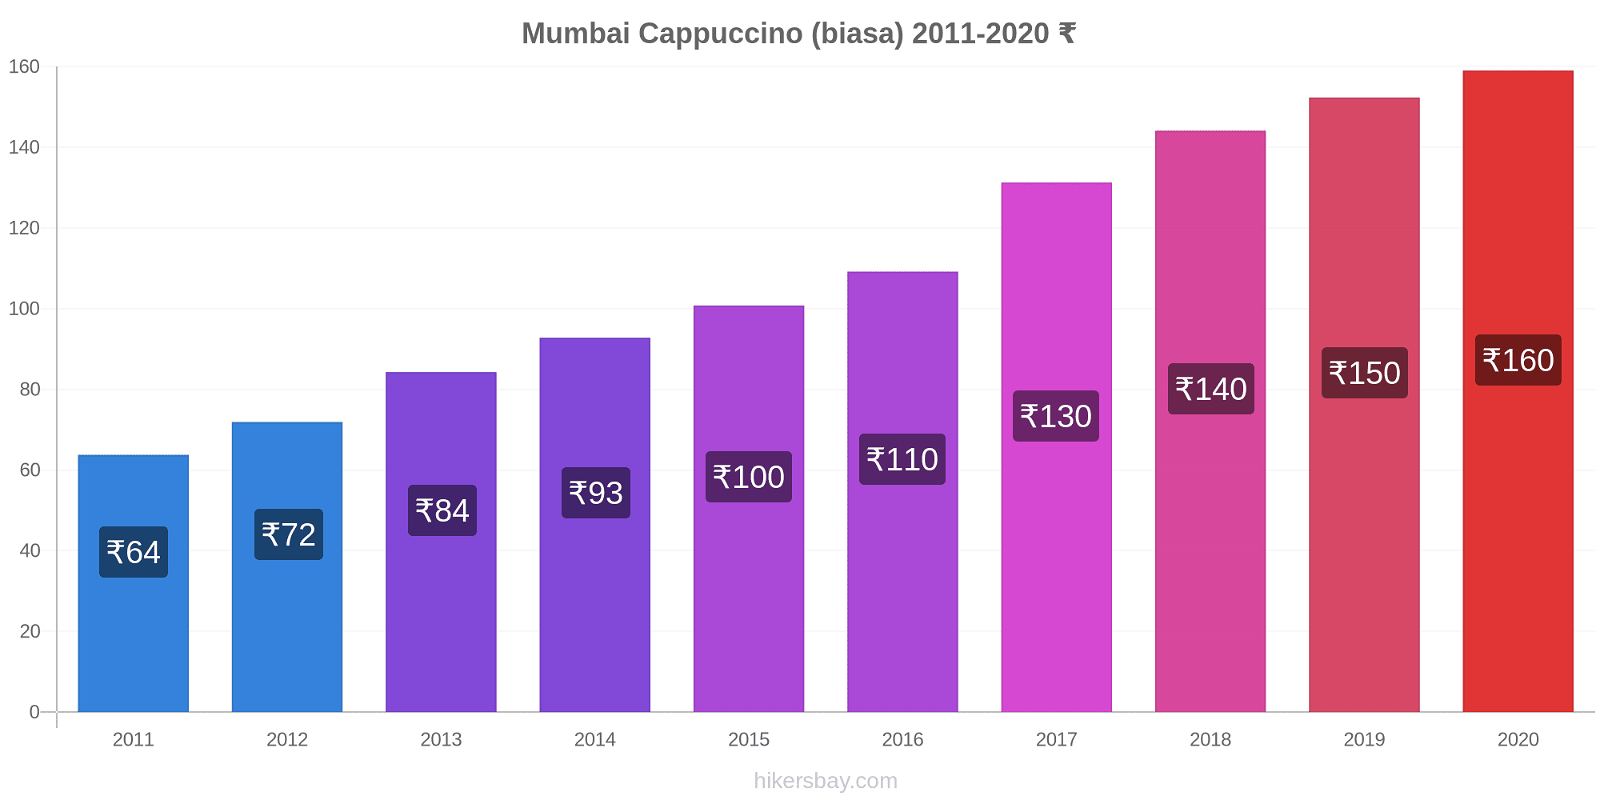 Mumbai perubahan harga Cappuccino (biasa) hikersbay.com